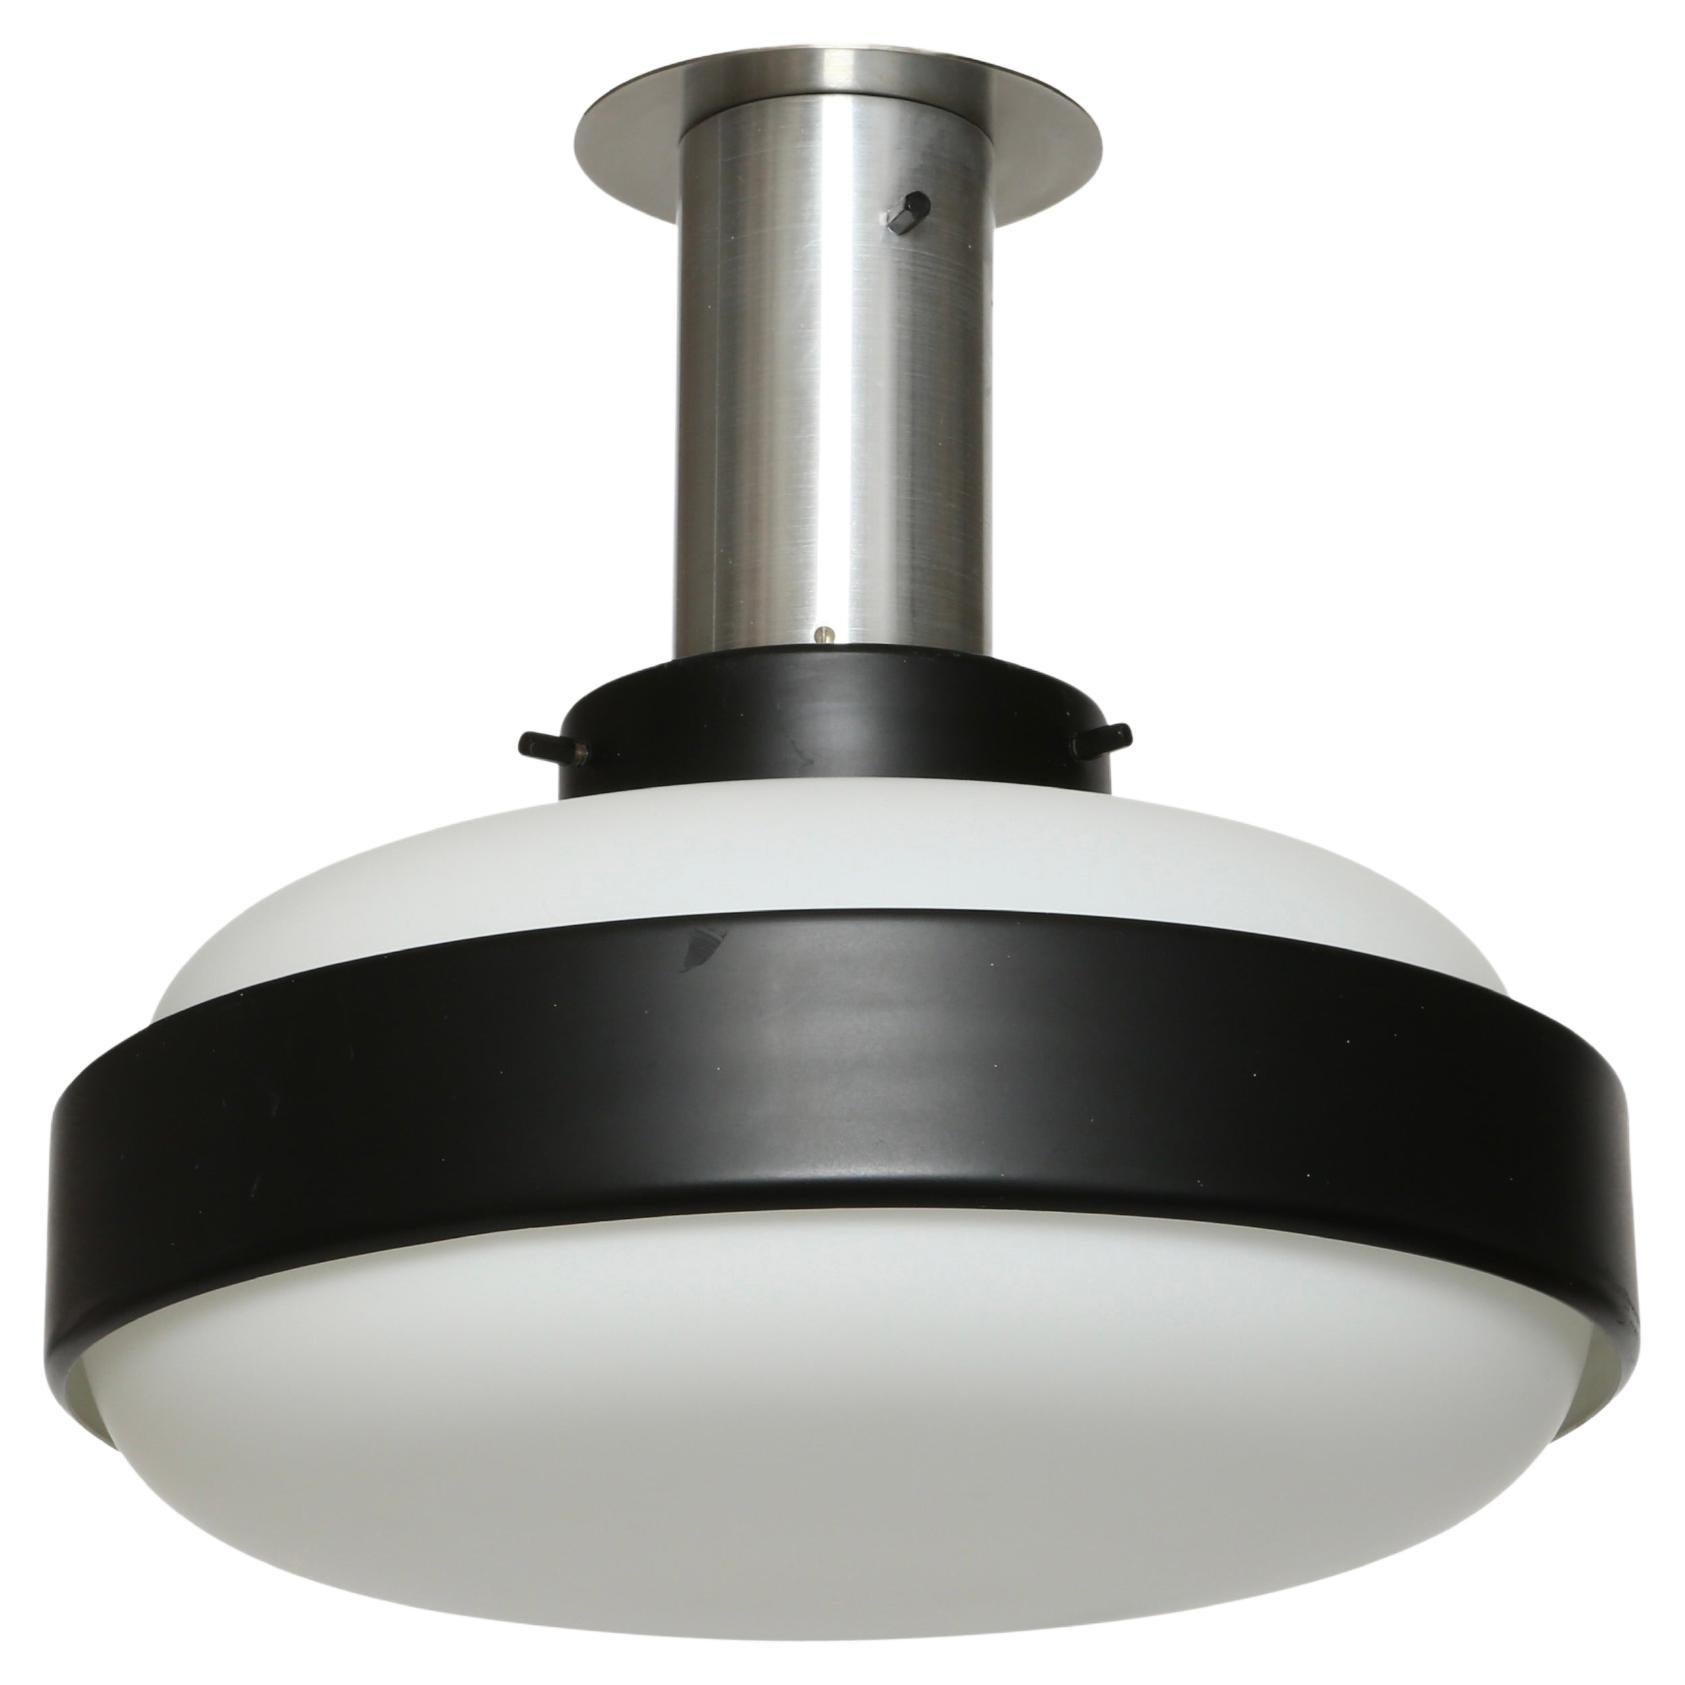 Stilnovo flush mount ceiling light